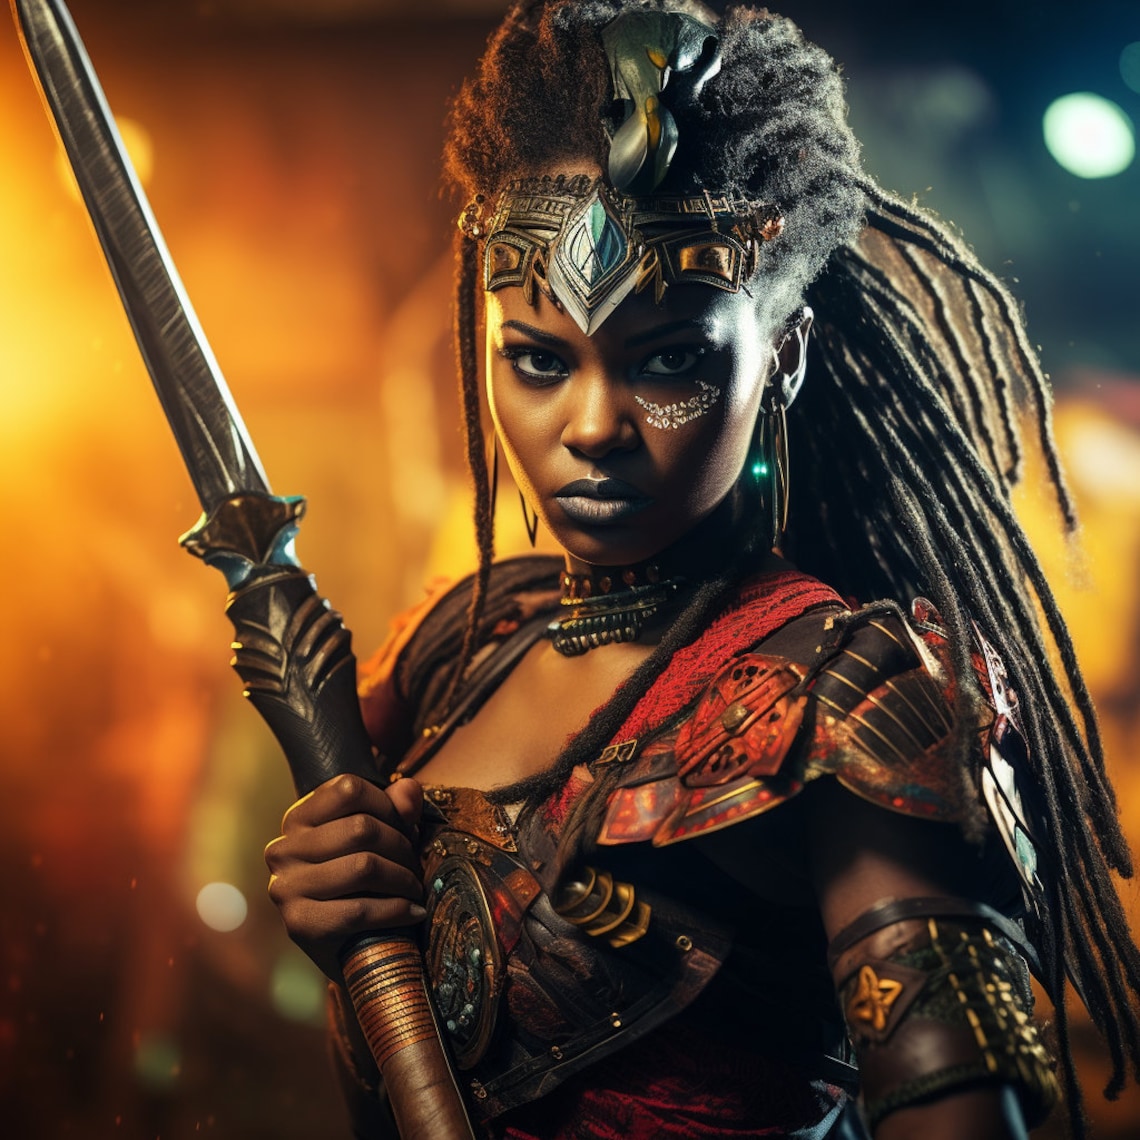 Black African Warrior Queen 4 (Download Now) - Etsy